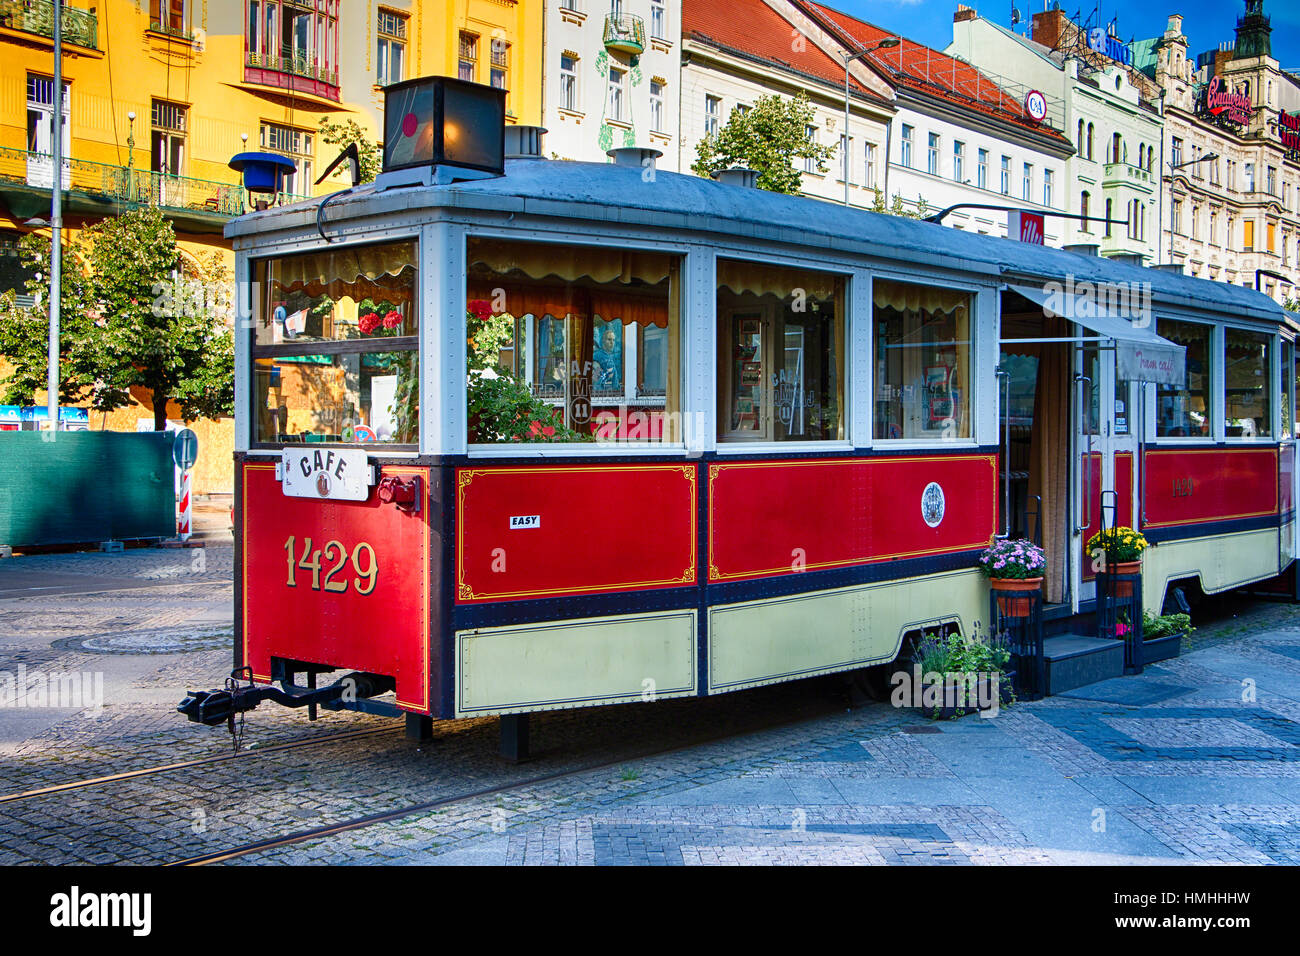 Blick auf eine antike Straßenbahn umgewandelt, ein Cafe und Restaurant, Wenzelsplatz, Parague, Tschechische Republik Stockfoto